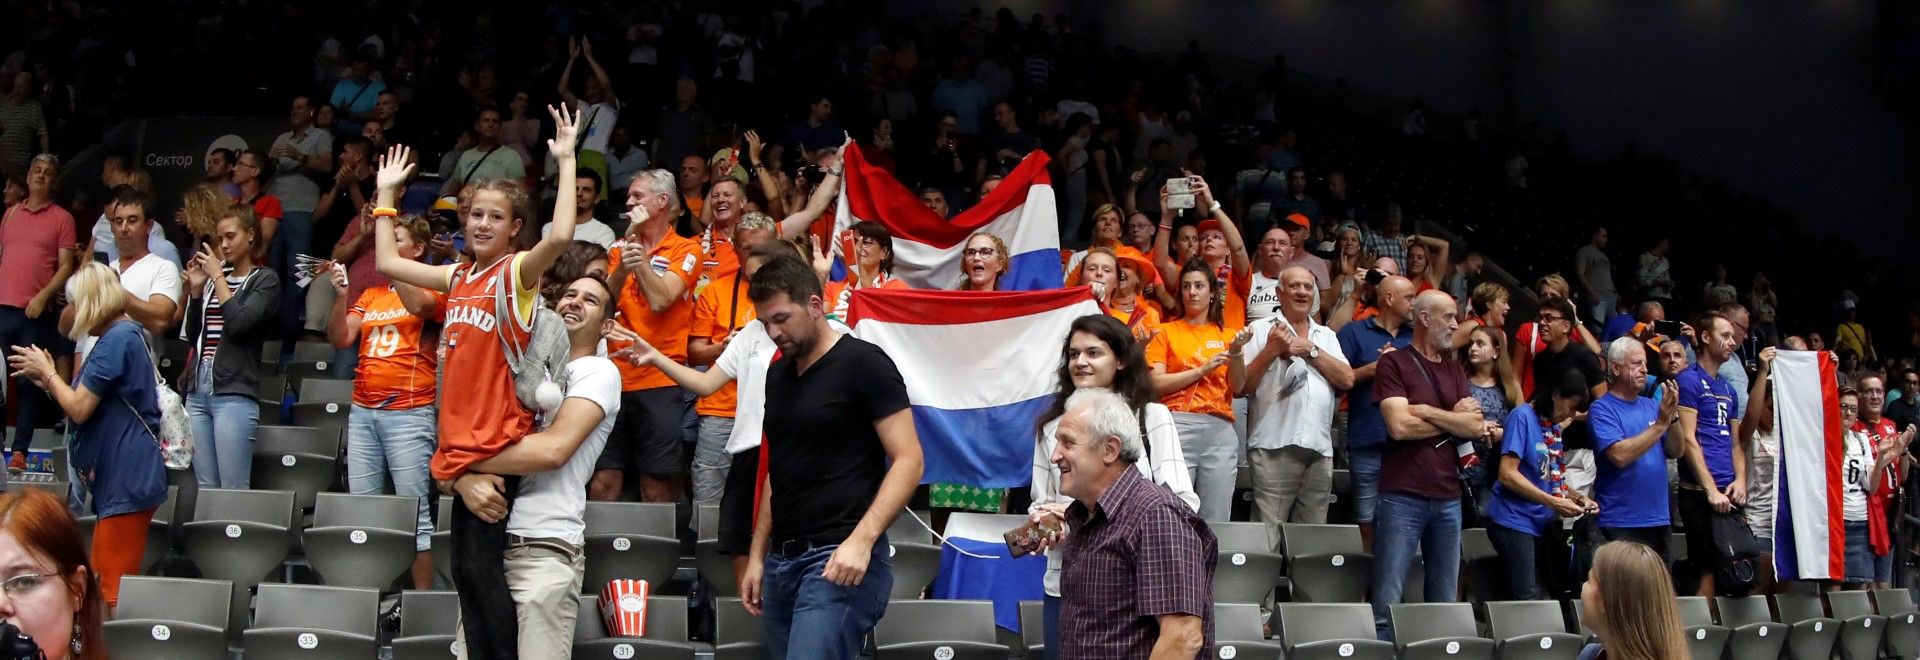 В Русе се появи и холандска агитка. Естествено - оранжевите също допринасят за цвета и шоуто на първенството.